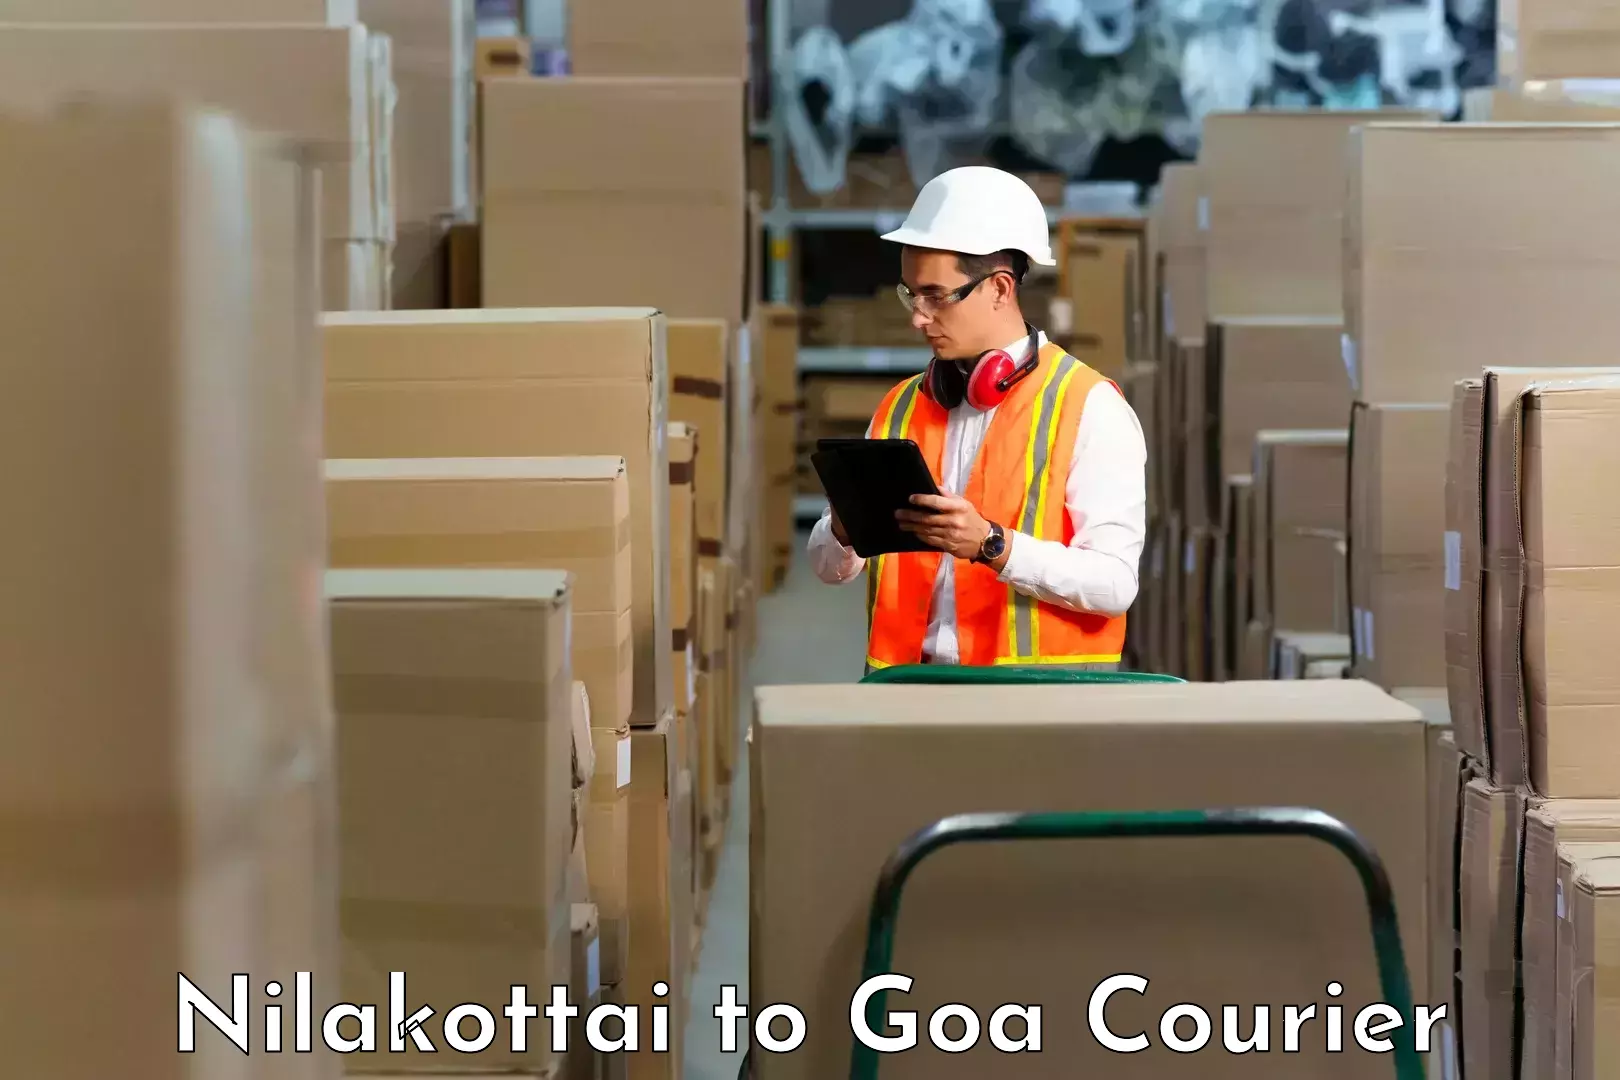 Customer-friendly courier services Nilakottai to Mormugao Port